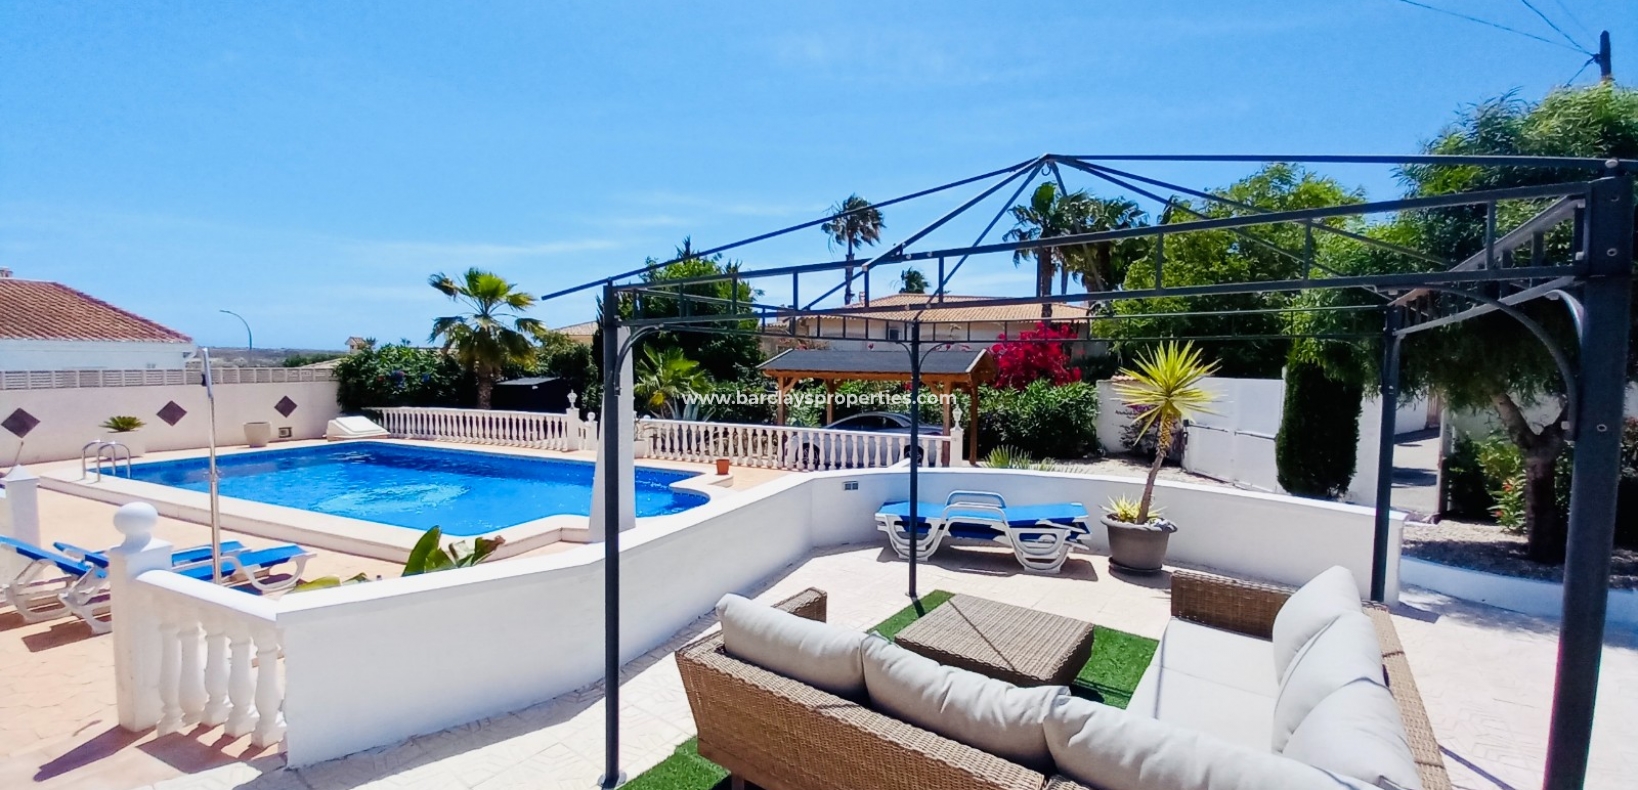 Pool Area - Prestige Villa for sale in La Marina